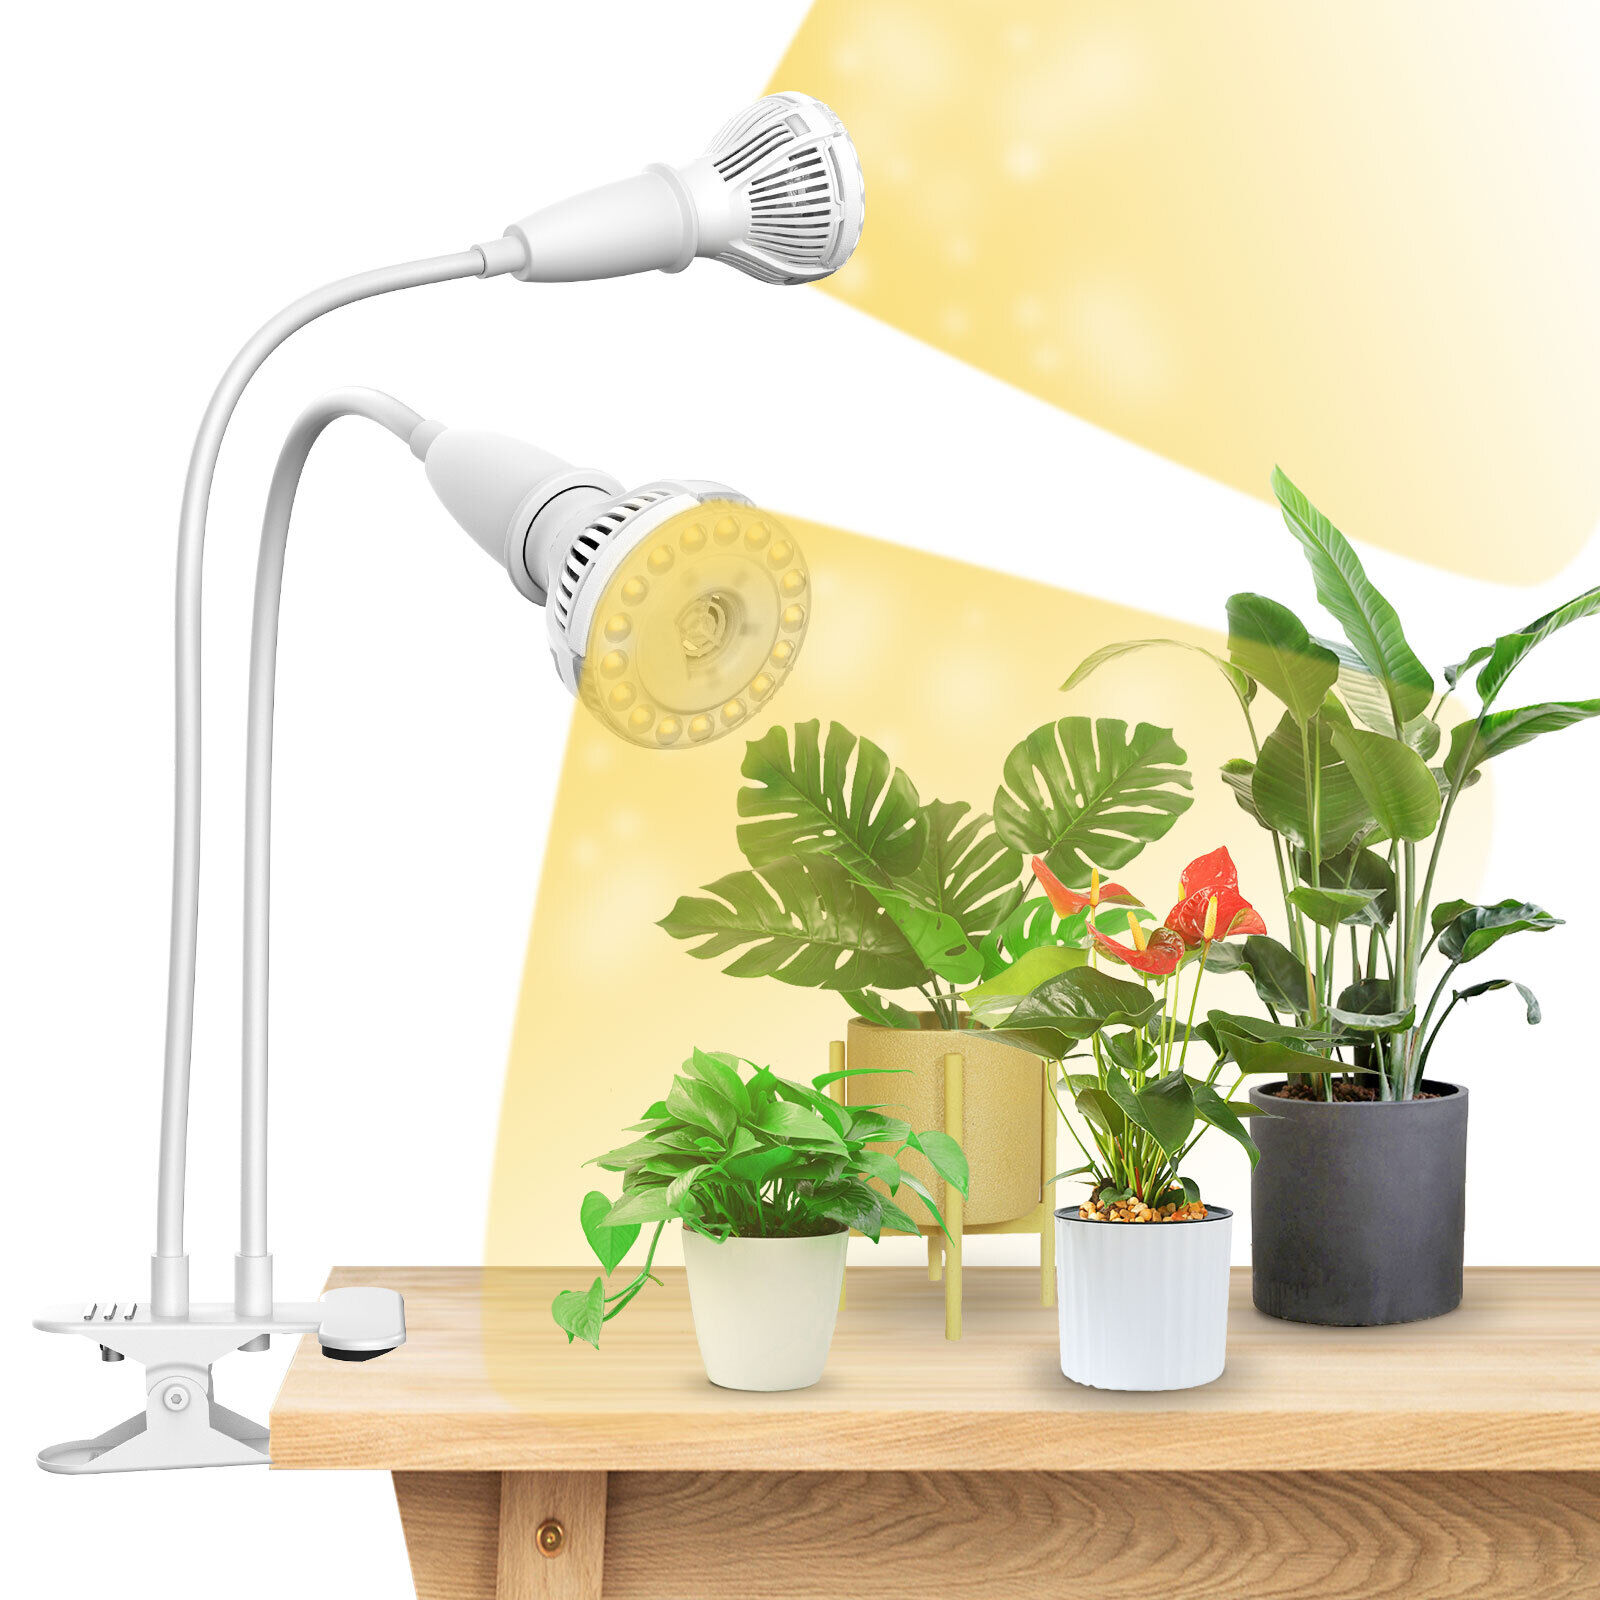 SANSI 20W LED Plant Grow Light Bulb Full Spectrum Indoor Grow Lamp Veg Bloom